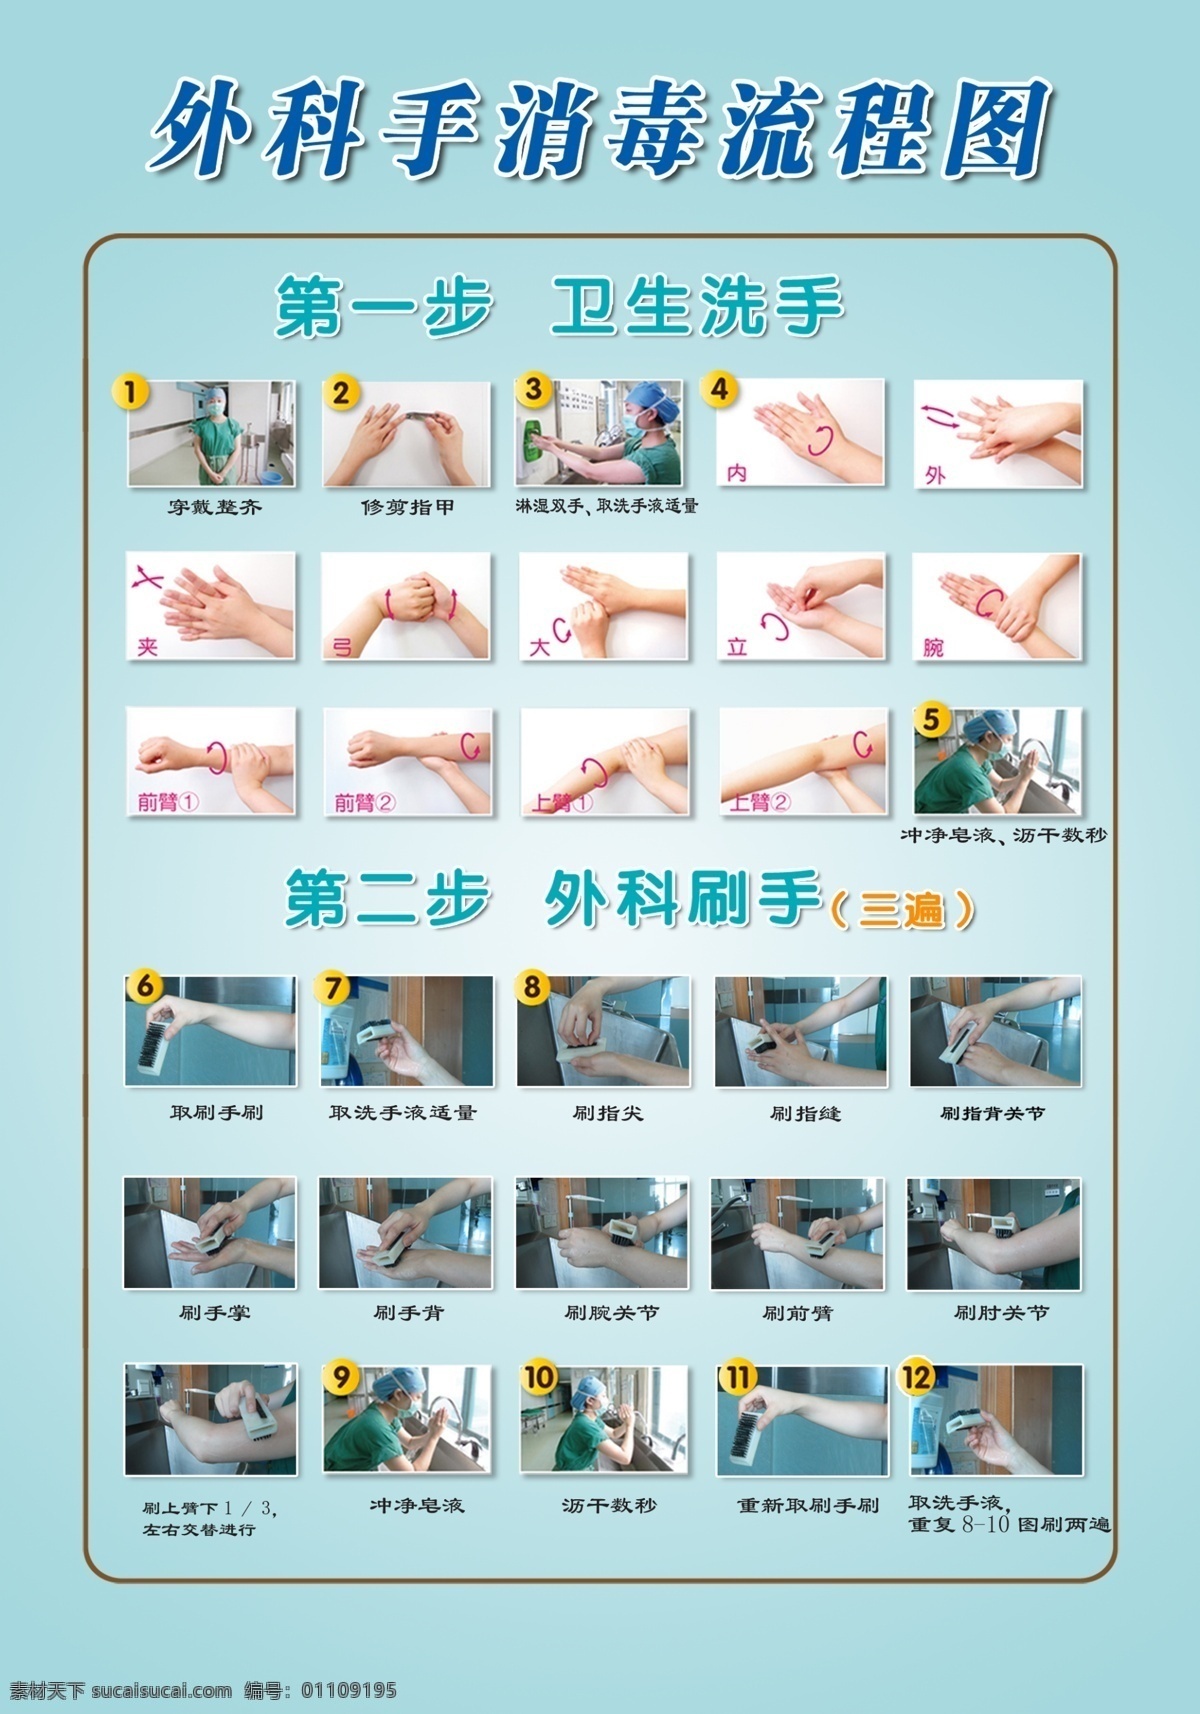 外科 手 消毒 流程图 手消毒 卫生 洗手 医院 室外广告设计